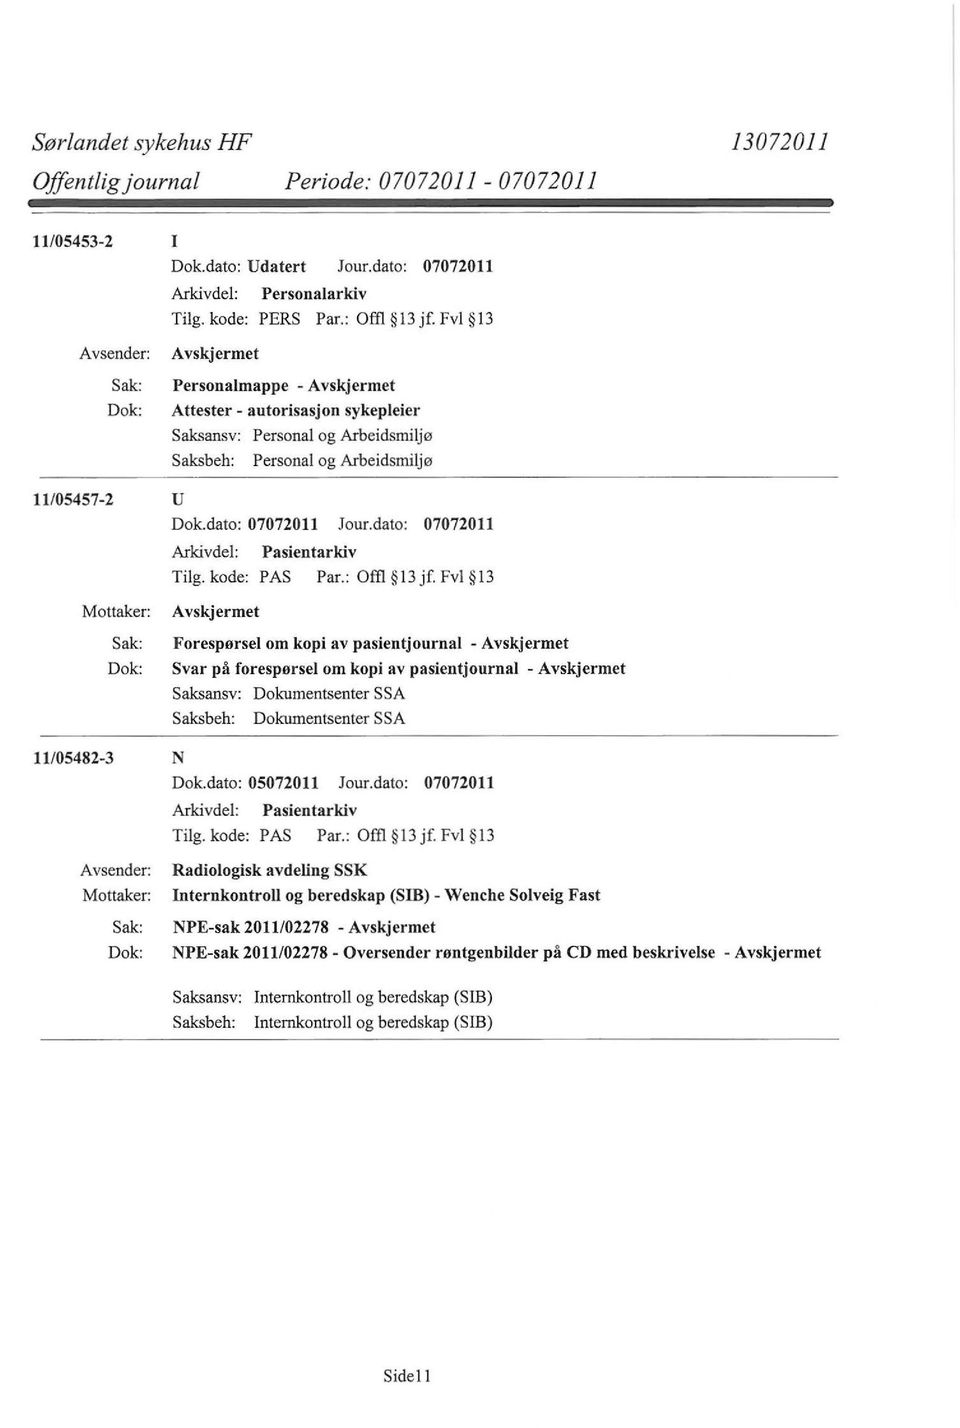 Fvl l3 Forespørsel om kopi av pasientjournal - Svar på forespørsel om kopi av pasientjournal - Saksansv: Dokumentsenter SSA Saksbeh: Dokumentsenter SSA 11/05482-3